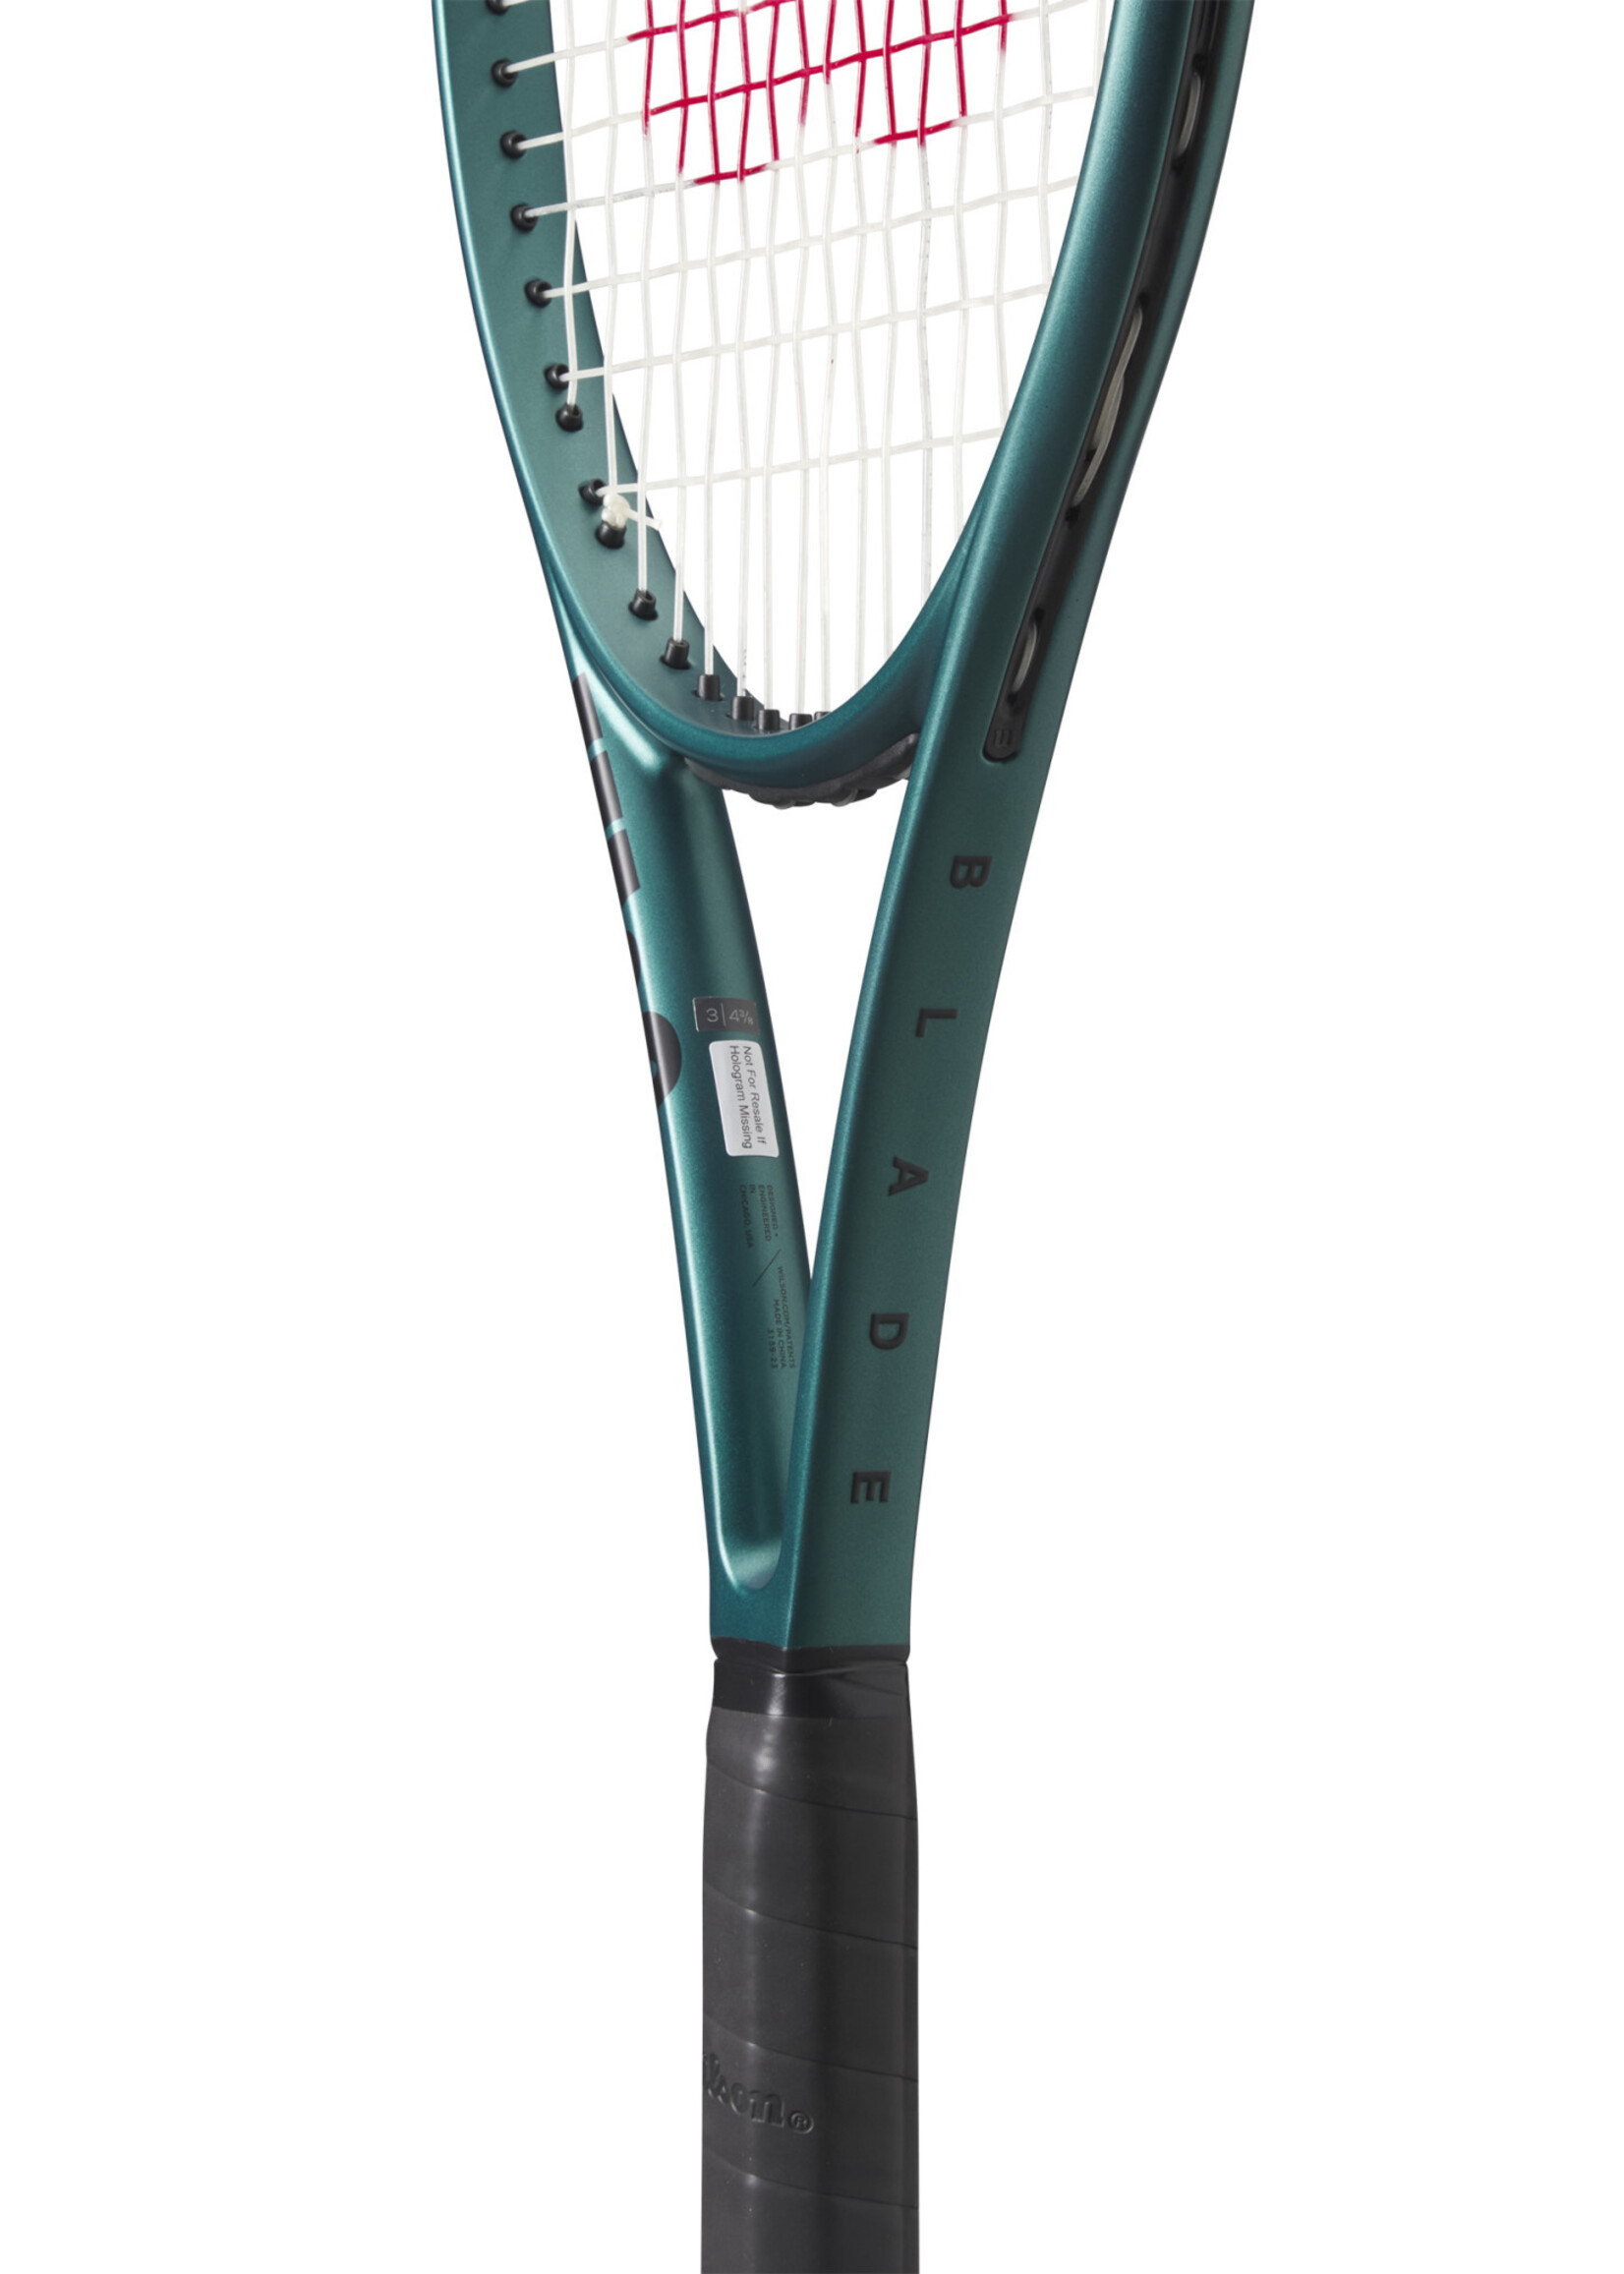 Wilson Wilson Blade 100 V9 (300g) 16x19 Tennis Racquet